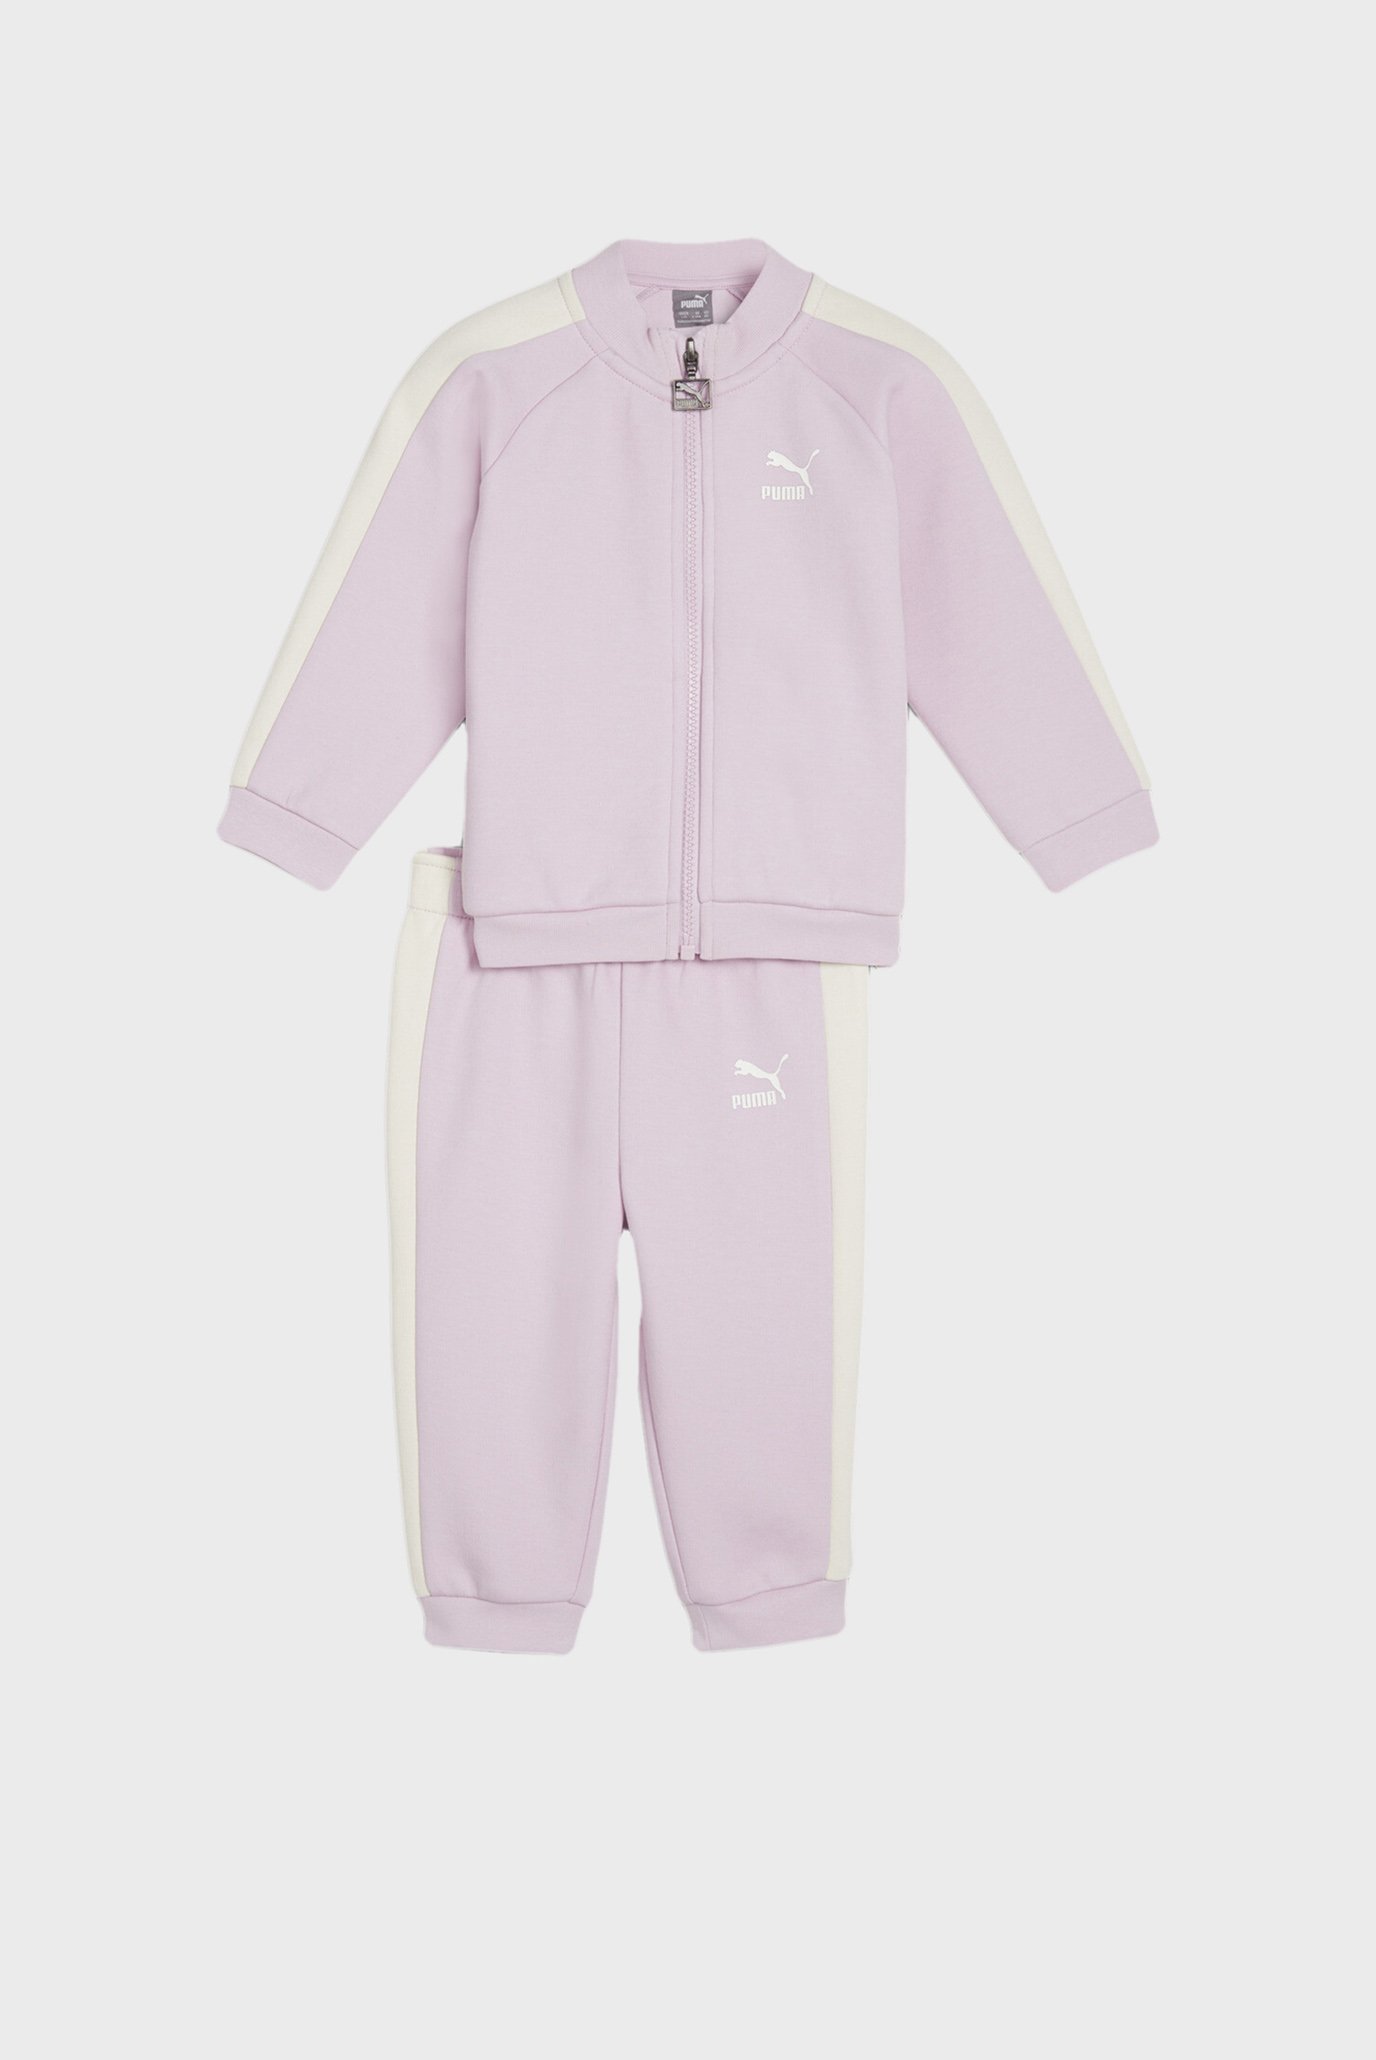 Детский розовый спортивный костюм (кофта, брюки) MINICATS T7 ICONIC Baby Tracksuit Set 1